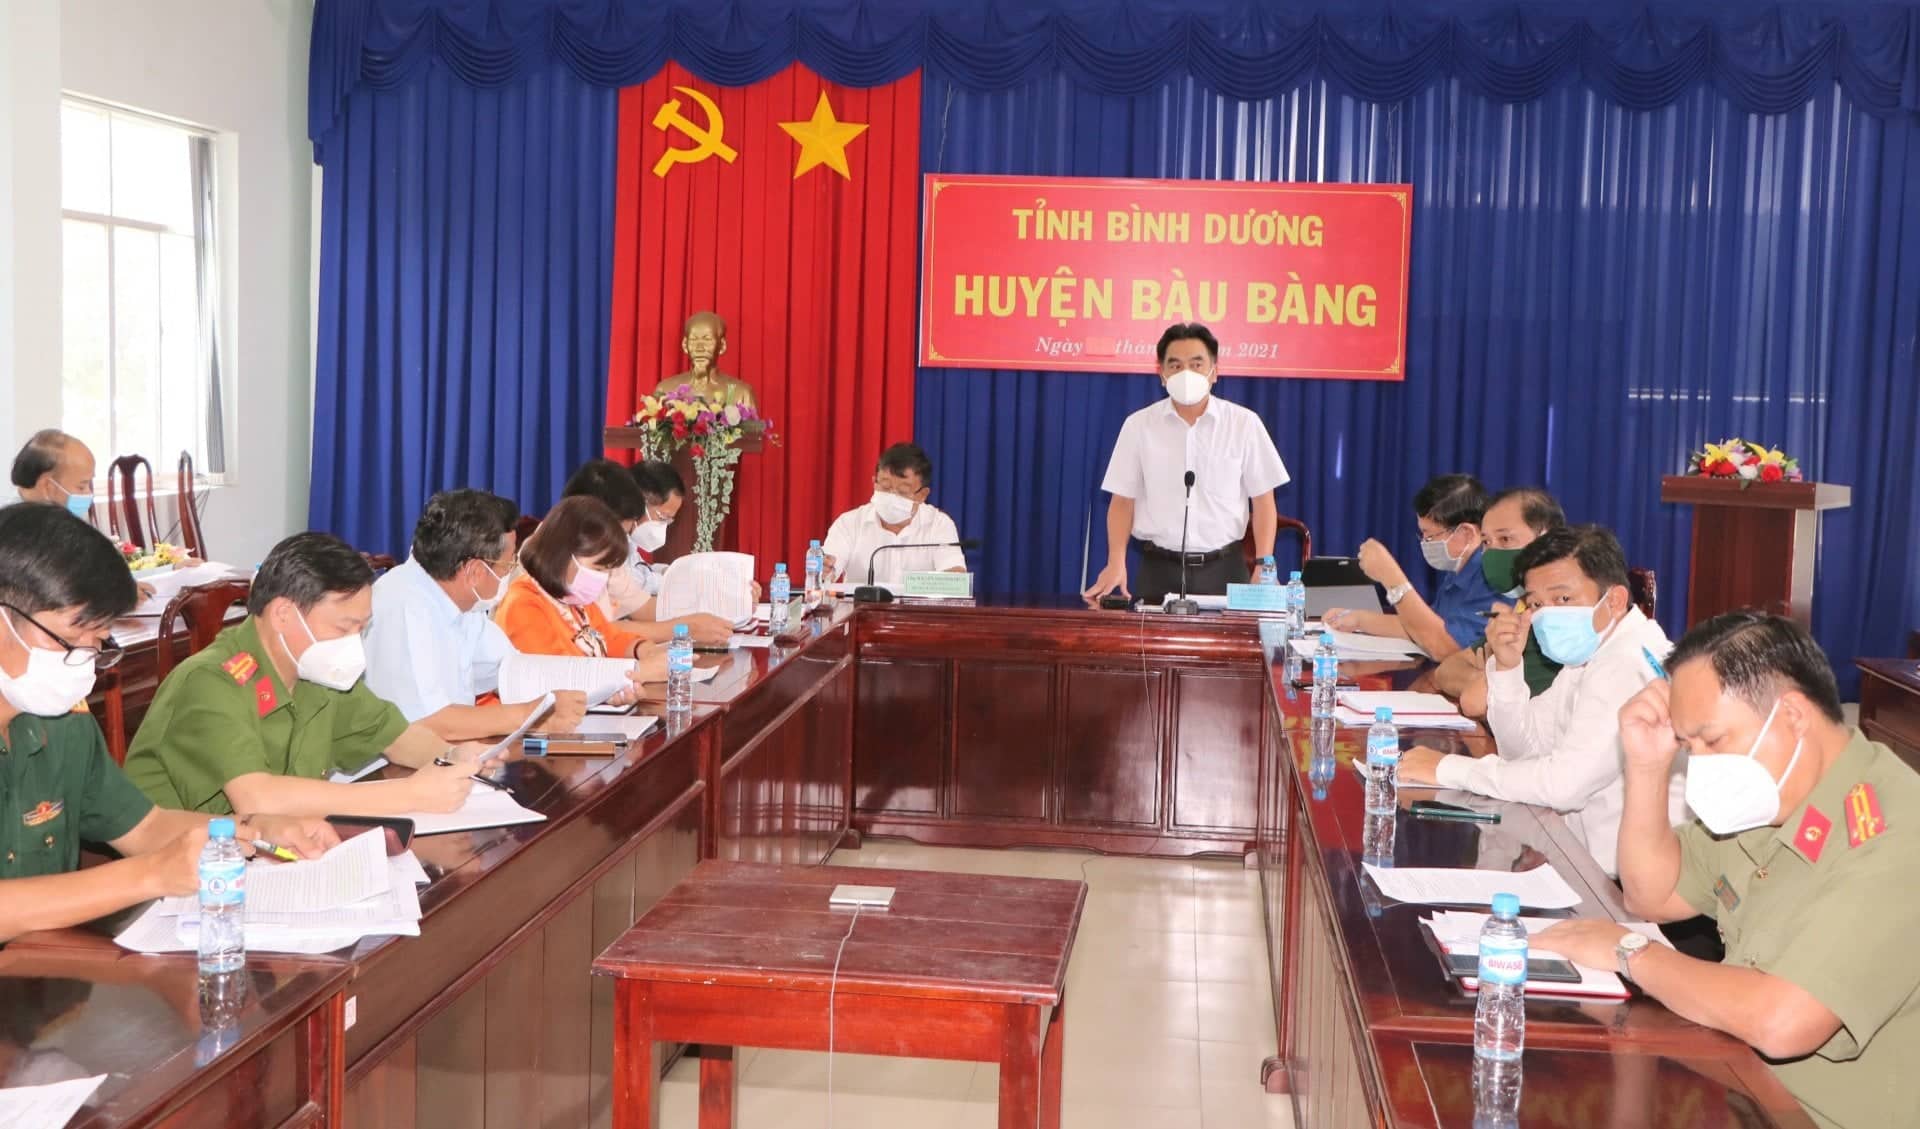 Lãnh đạo UBND tỉnh làm việc với huyện Bàu Bàng về công tác phòng chống dịch bệnh trên địa bàn trong trạng thái bình thường mới